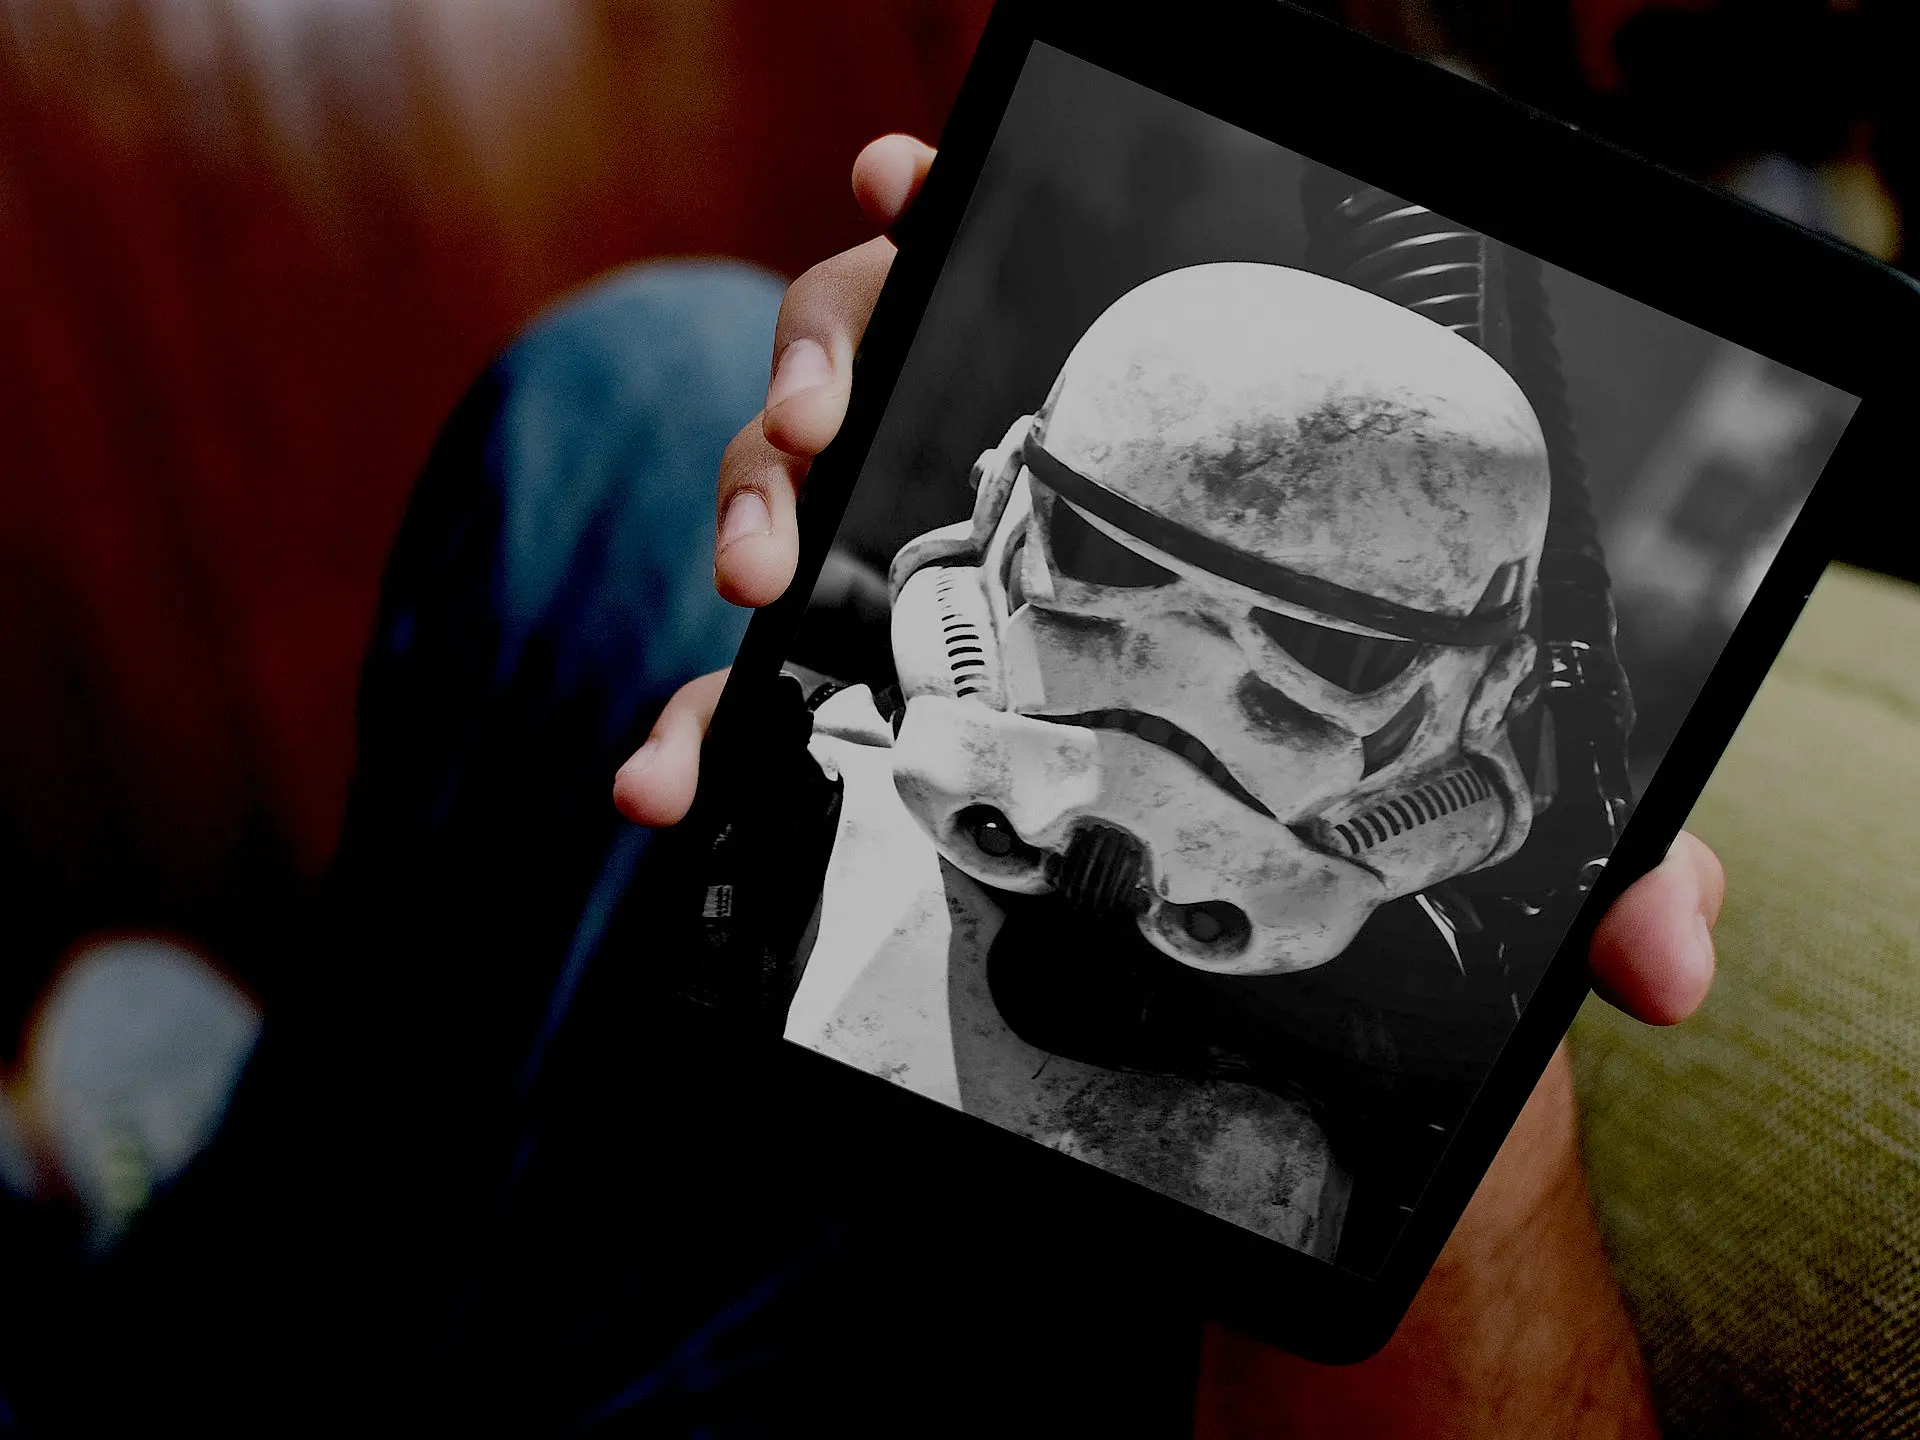 Wallpaper Star Wars untuk iPhone dan iPad